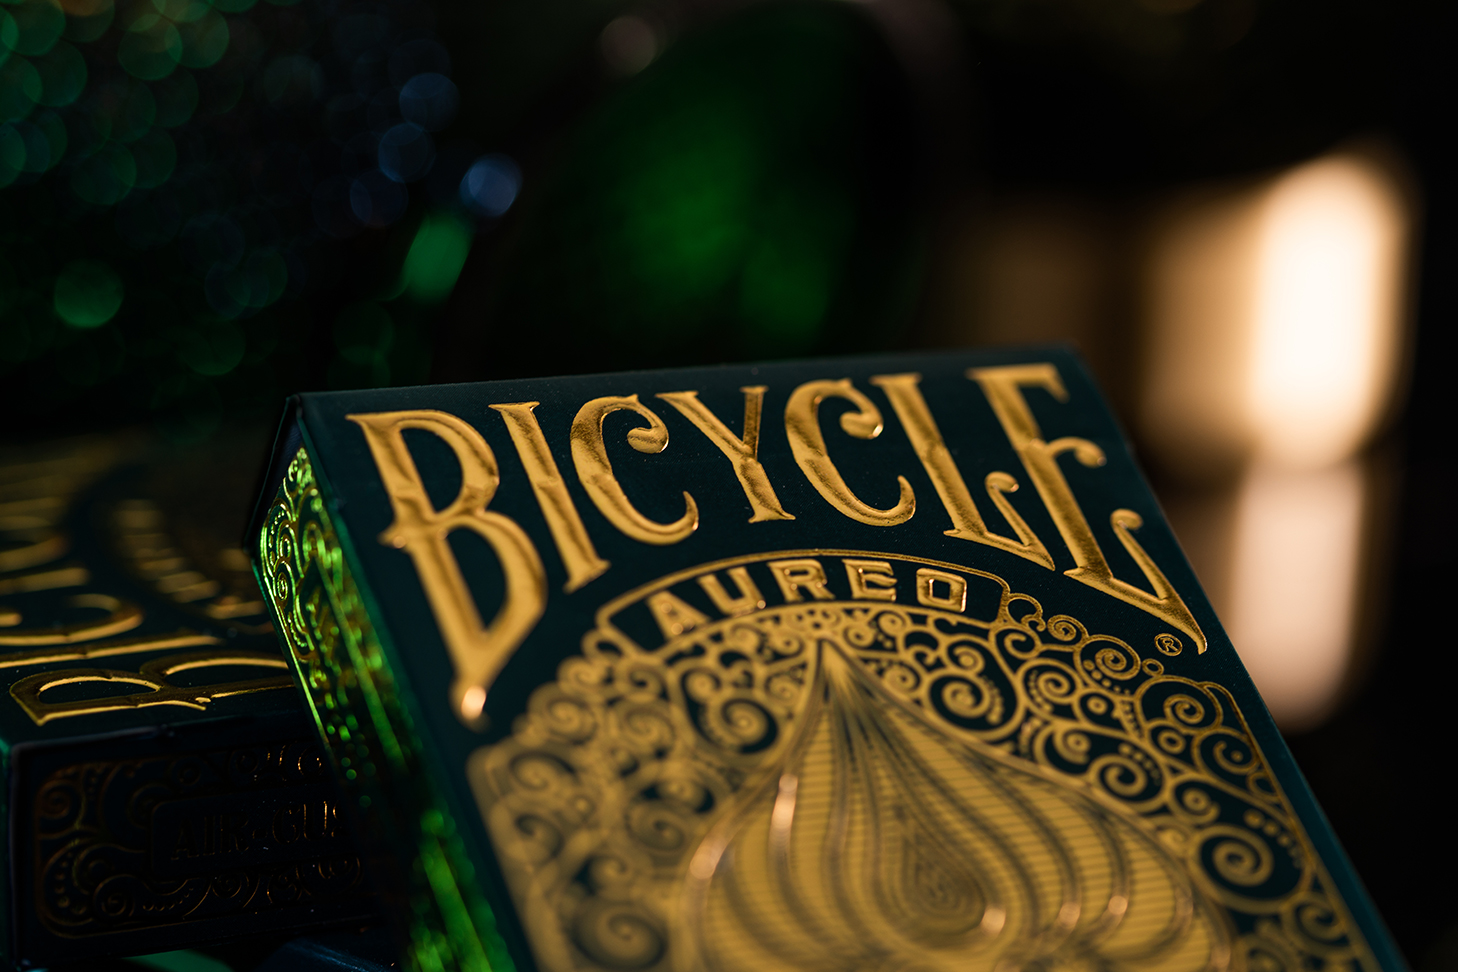 Eine Bicycle Creatives Aureo Kartenschachtel lehnt mit sichtbarer Vorderseite an einer anderen Schachtel vor einem dunklem und unscharfem Hintergrund. Das Bicycle Logo ist sichtbar.